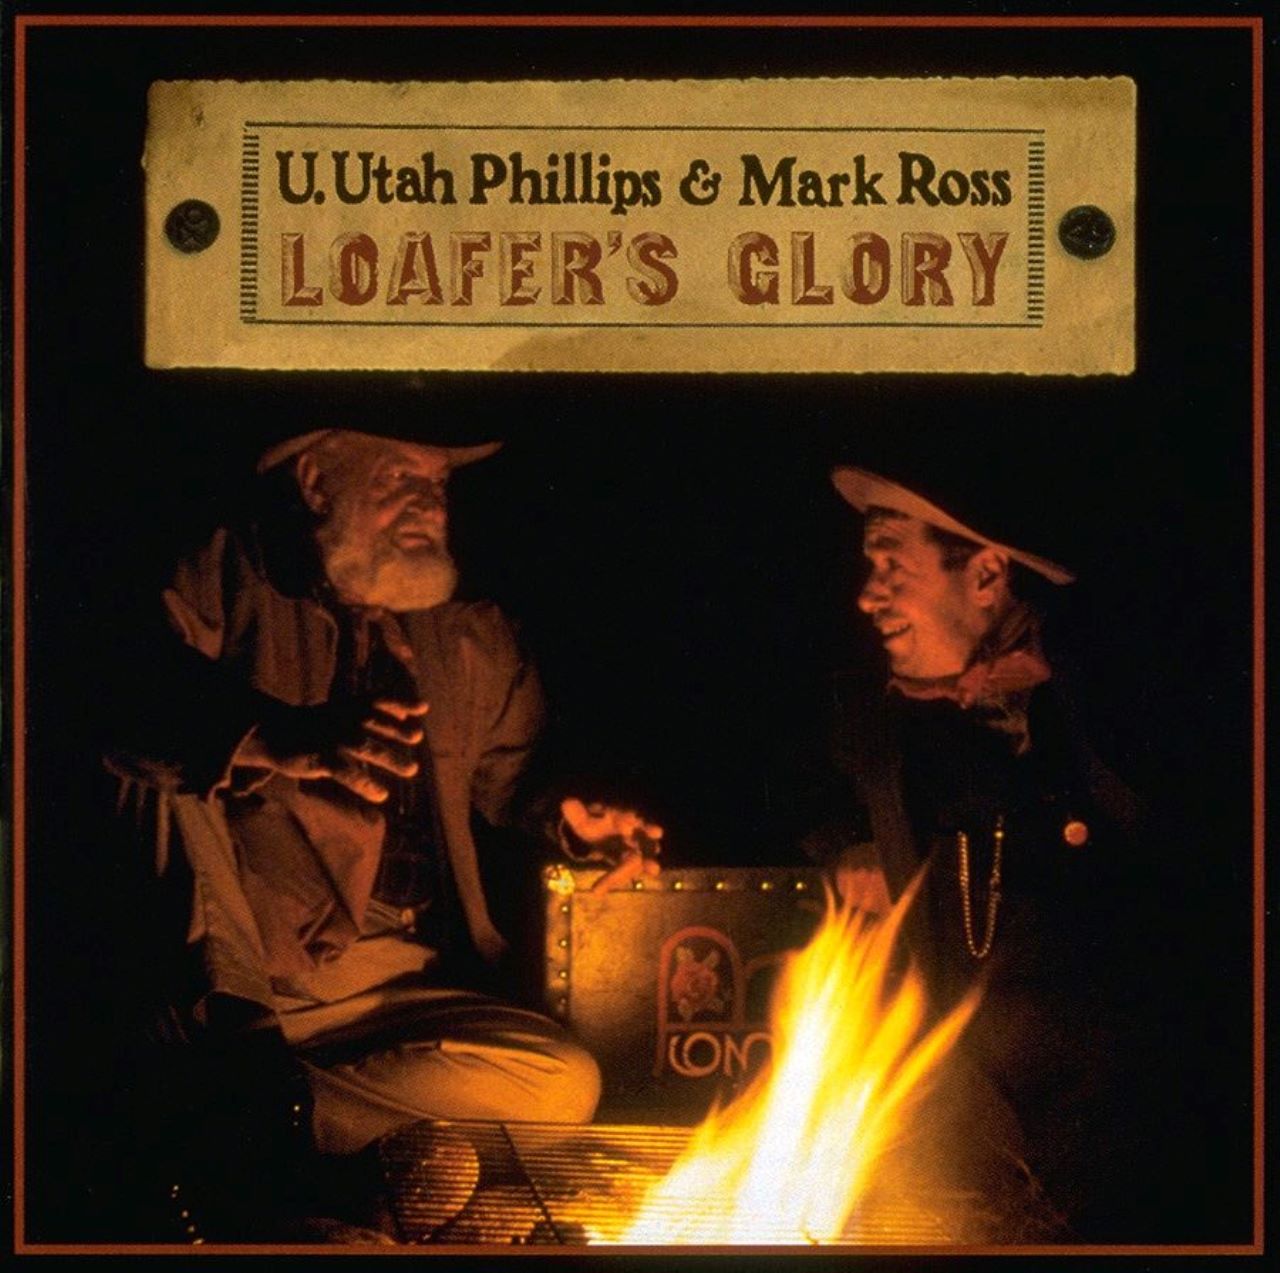 Utah Phillips & Mark Ross - Loafer's Glory cover album